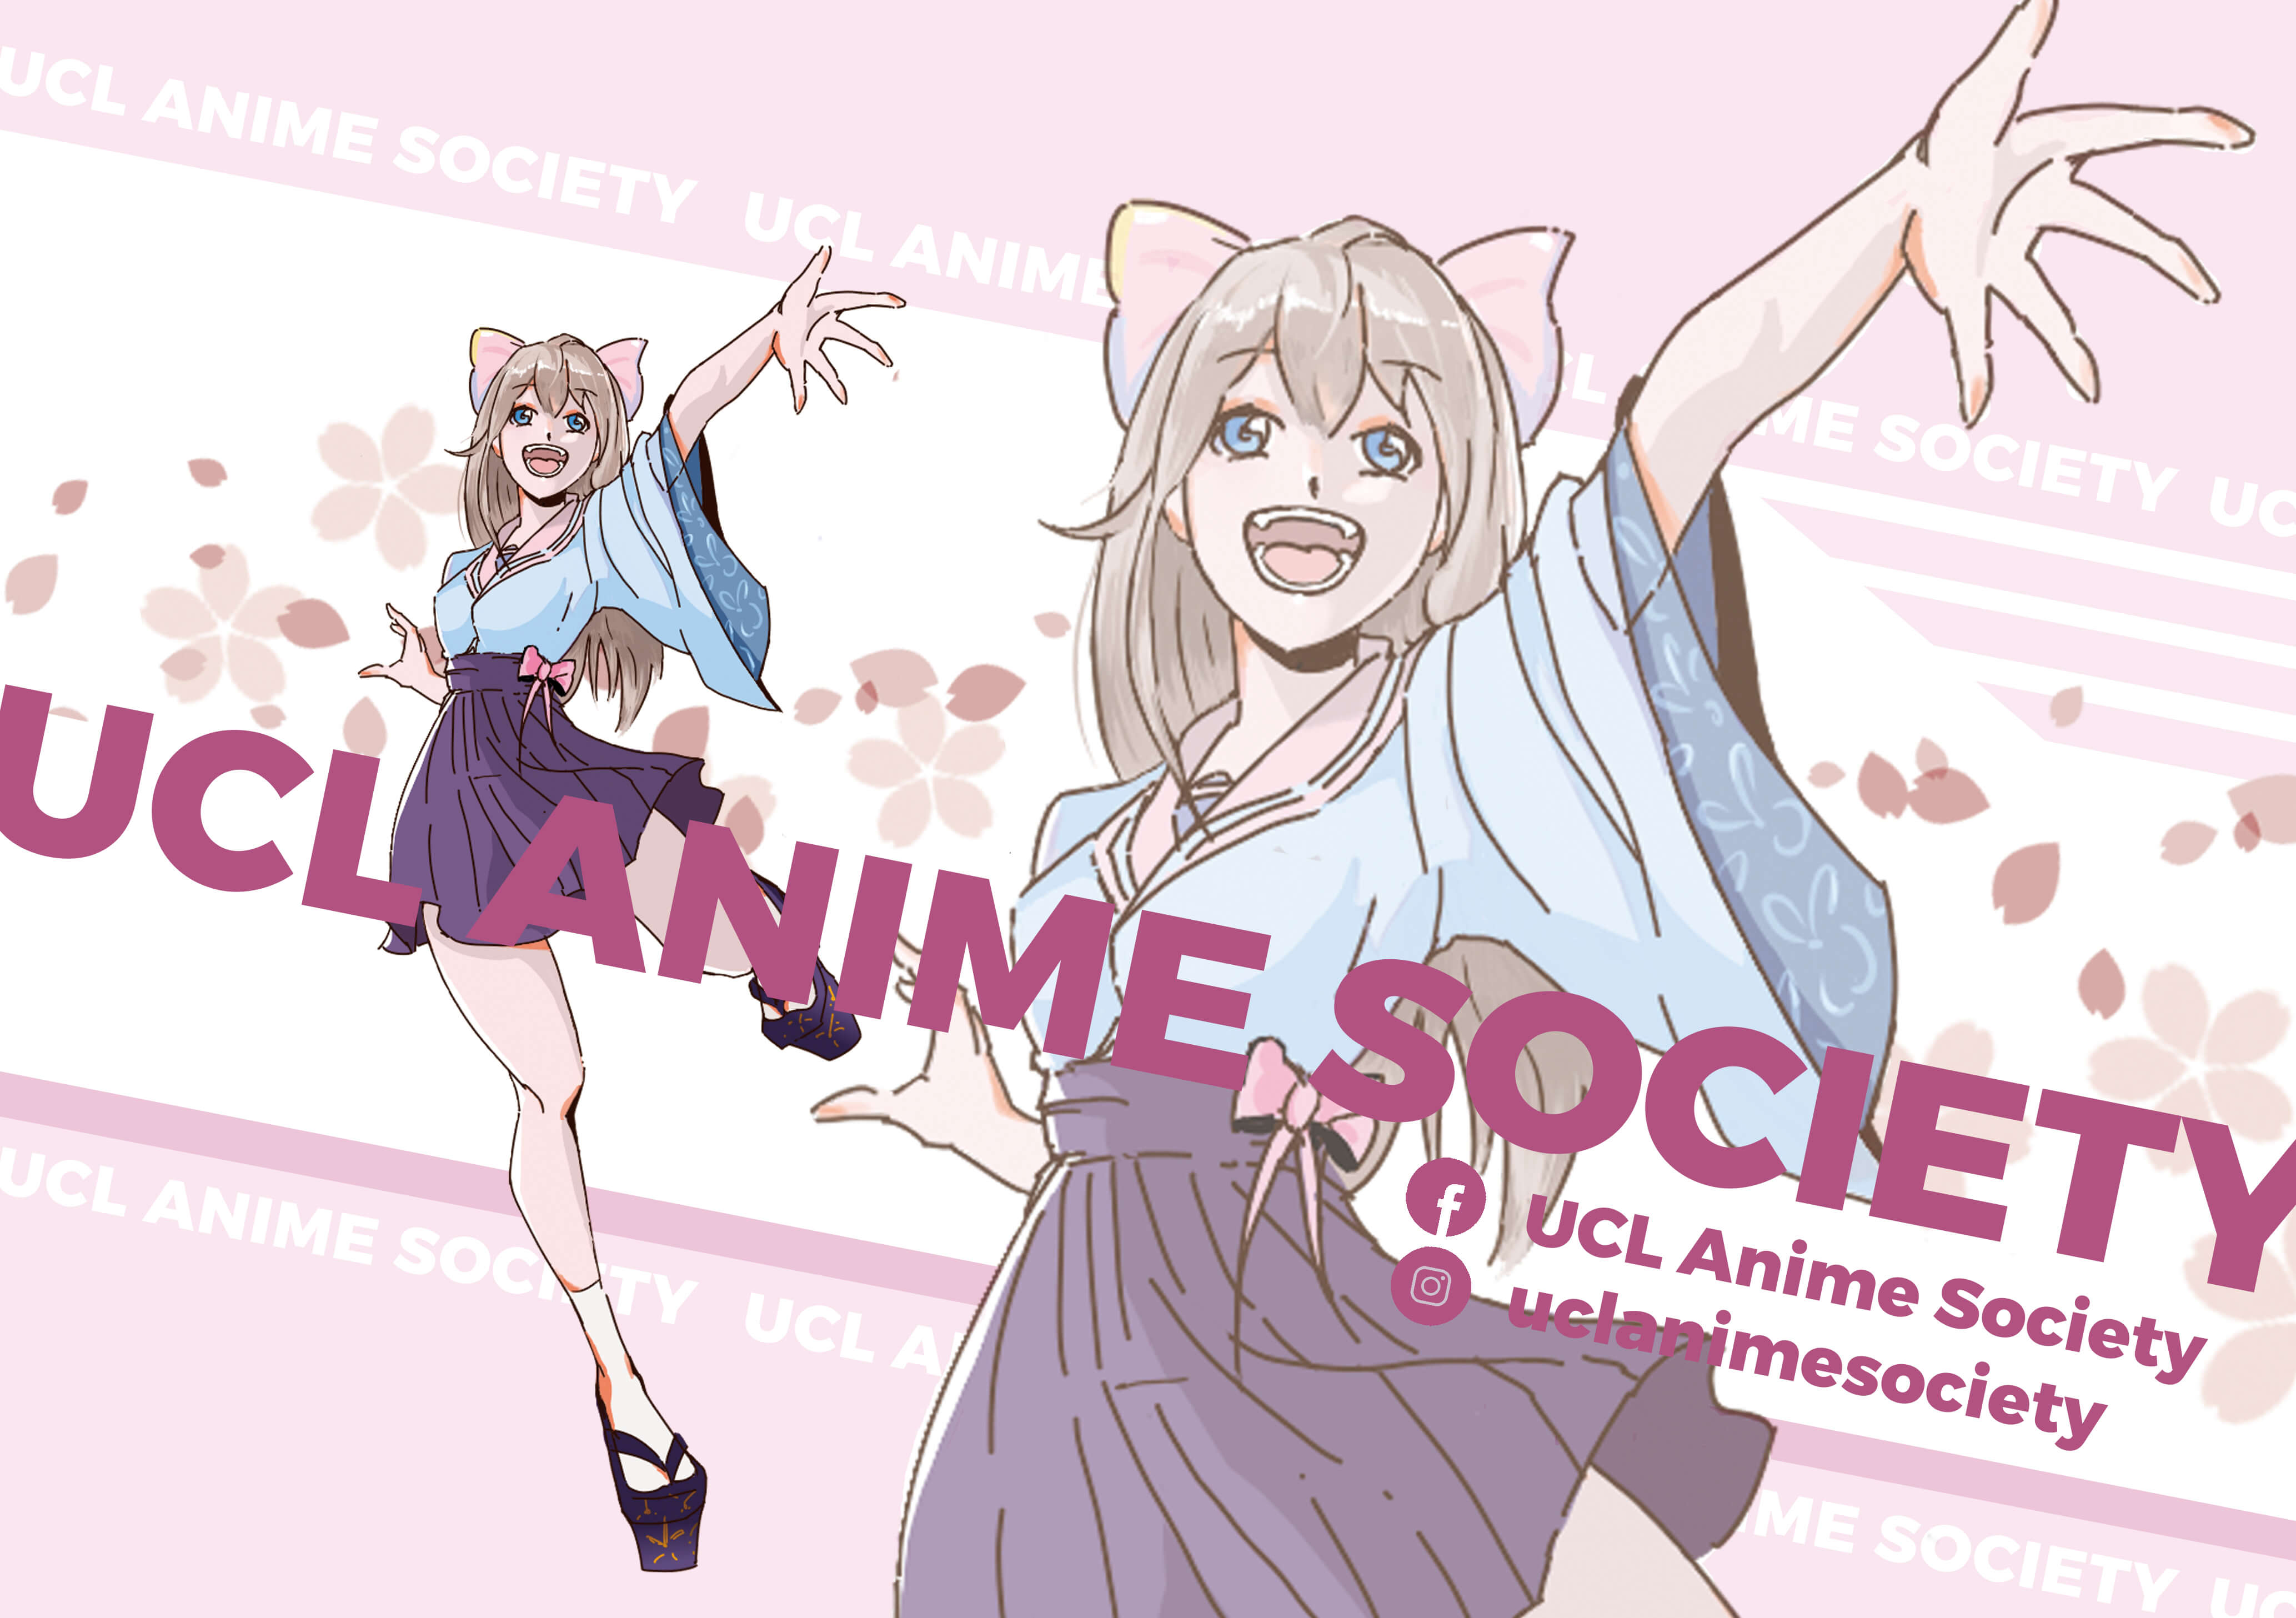 Anime Club / Welcome